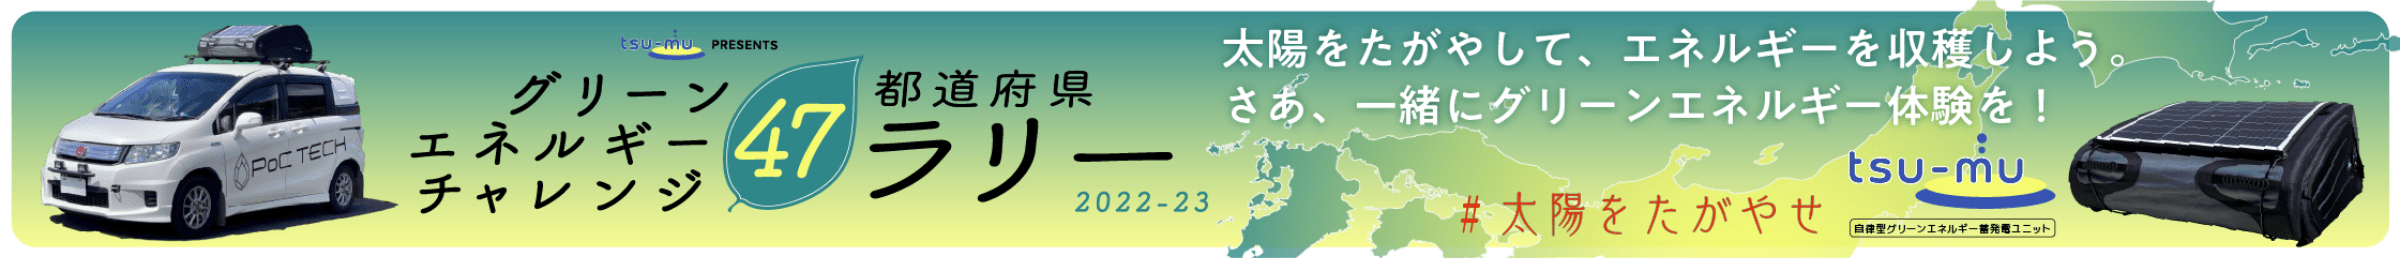 グリーンエネルギーチャレンジ47都道府県ラリー 2022-23 太陽をたがやして、エネルギーを収穫しよう。さあ、一緒にグリーンエネルギー体験を！